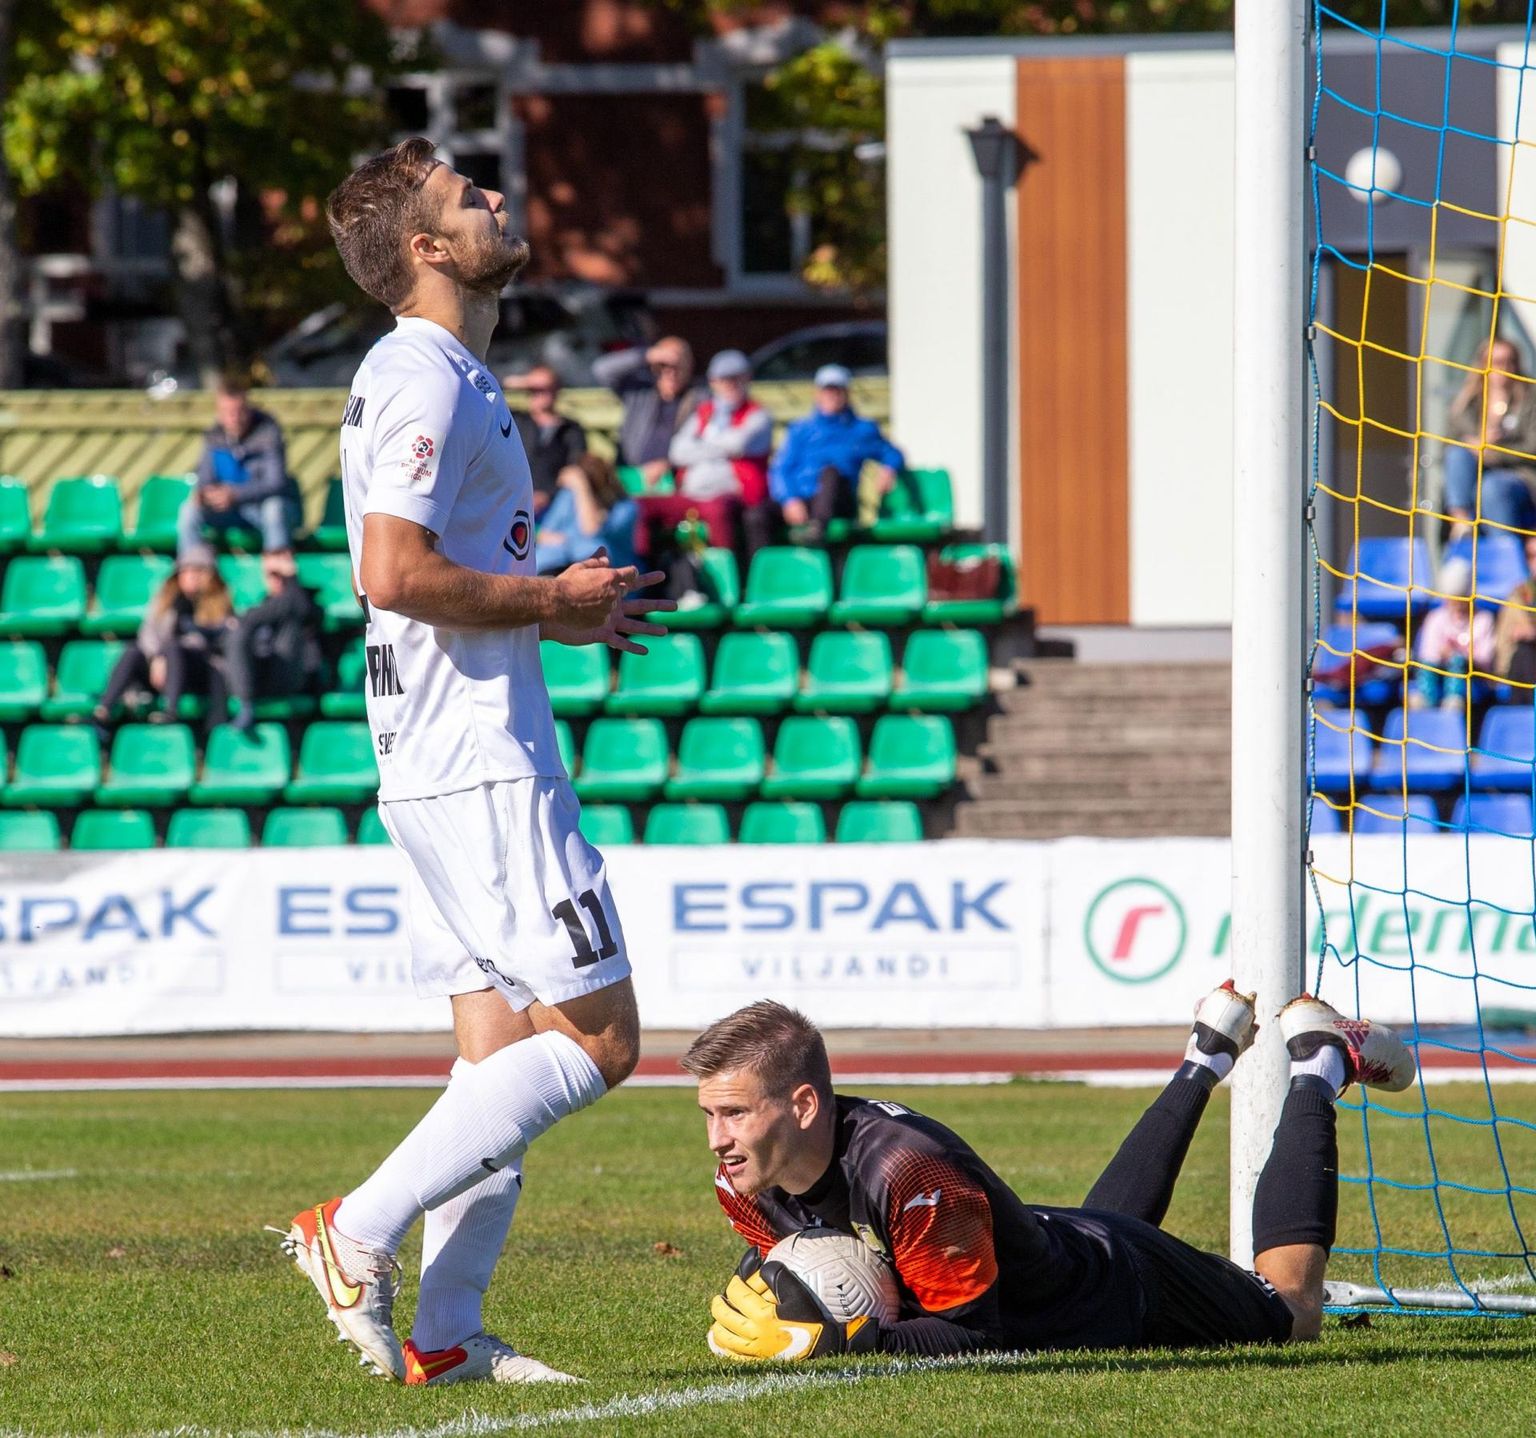 Tulevik võttis pühapäeval kodustaadionil FC Flora vastu viigipunkti. Kollasärkide väravavahil Marten Ritsonil tuli väravast noppida kaks palli, ent seevastu löödi ise samuti kaks.